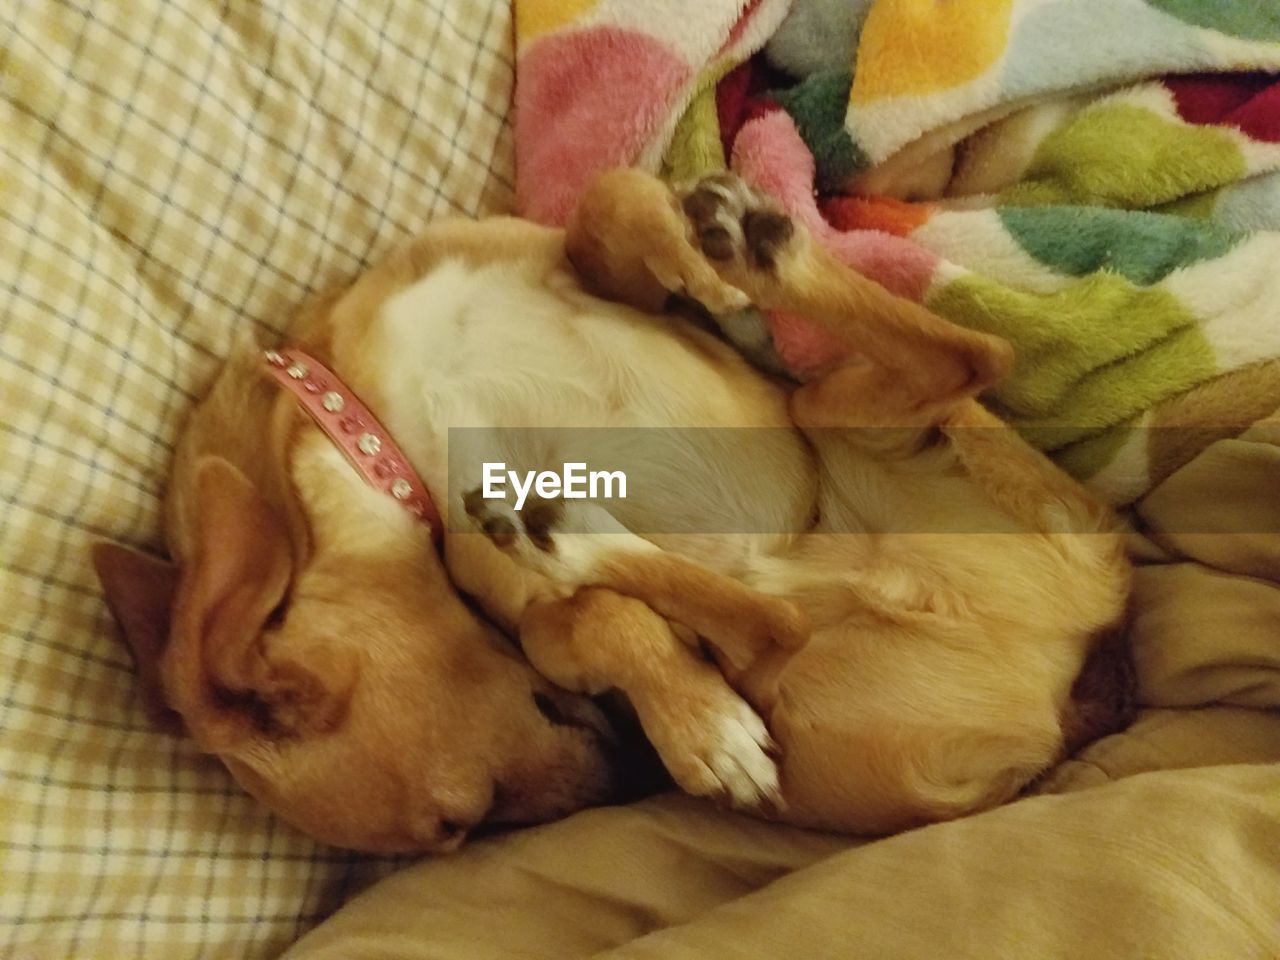 DOG SLEEPING ON BED